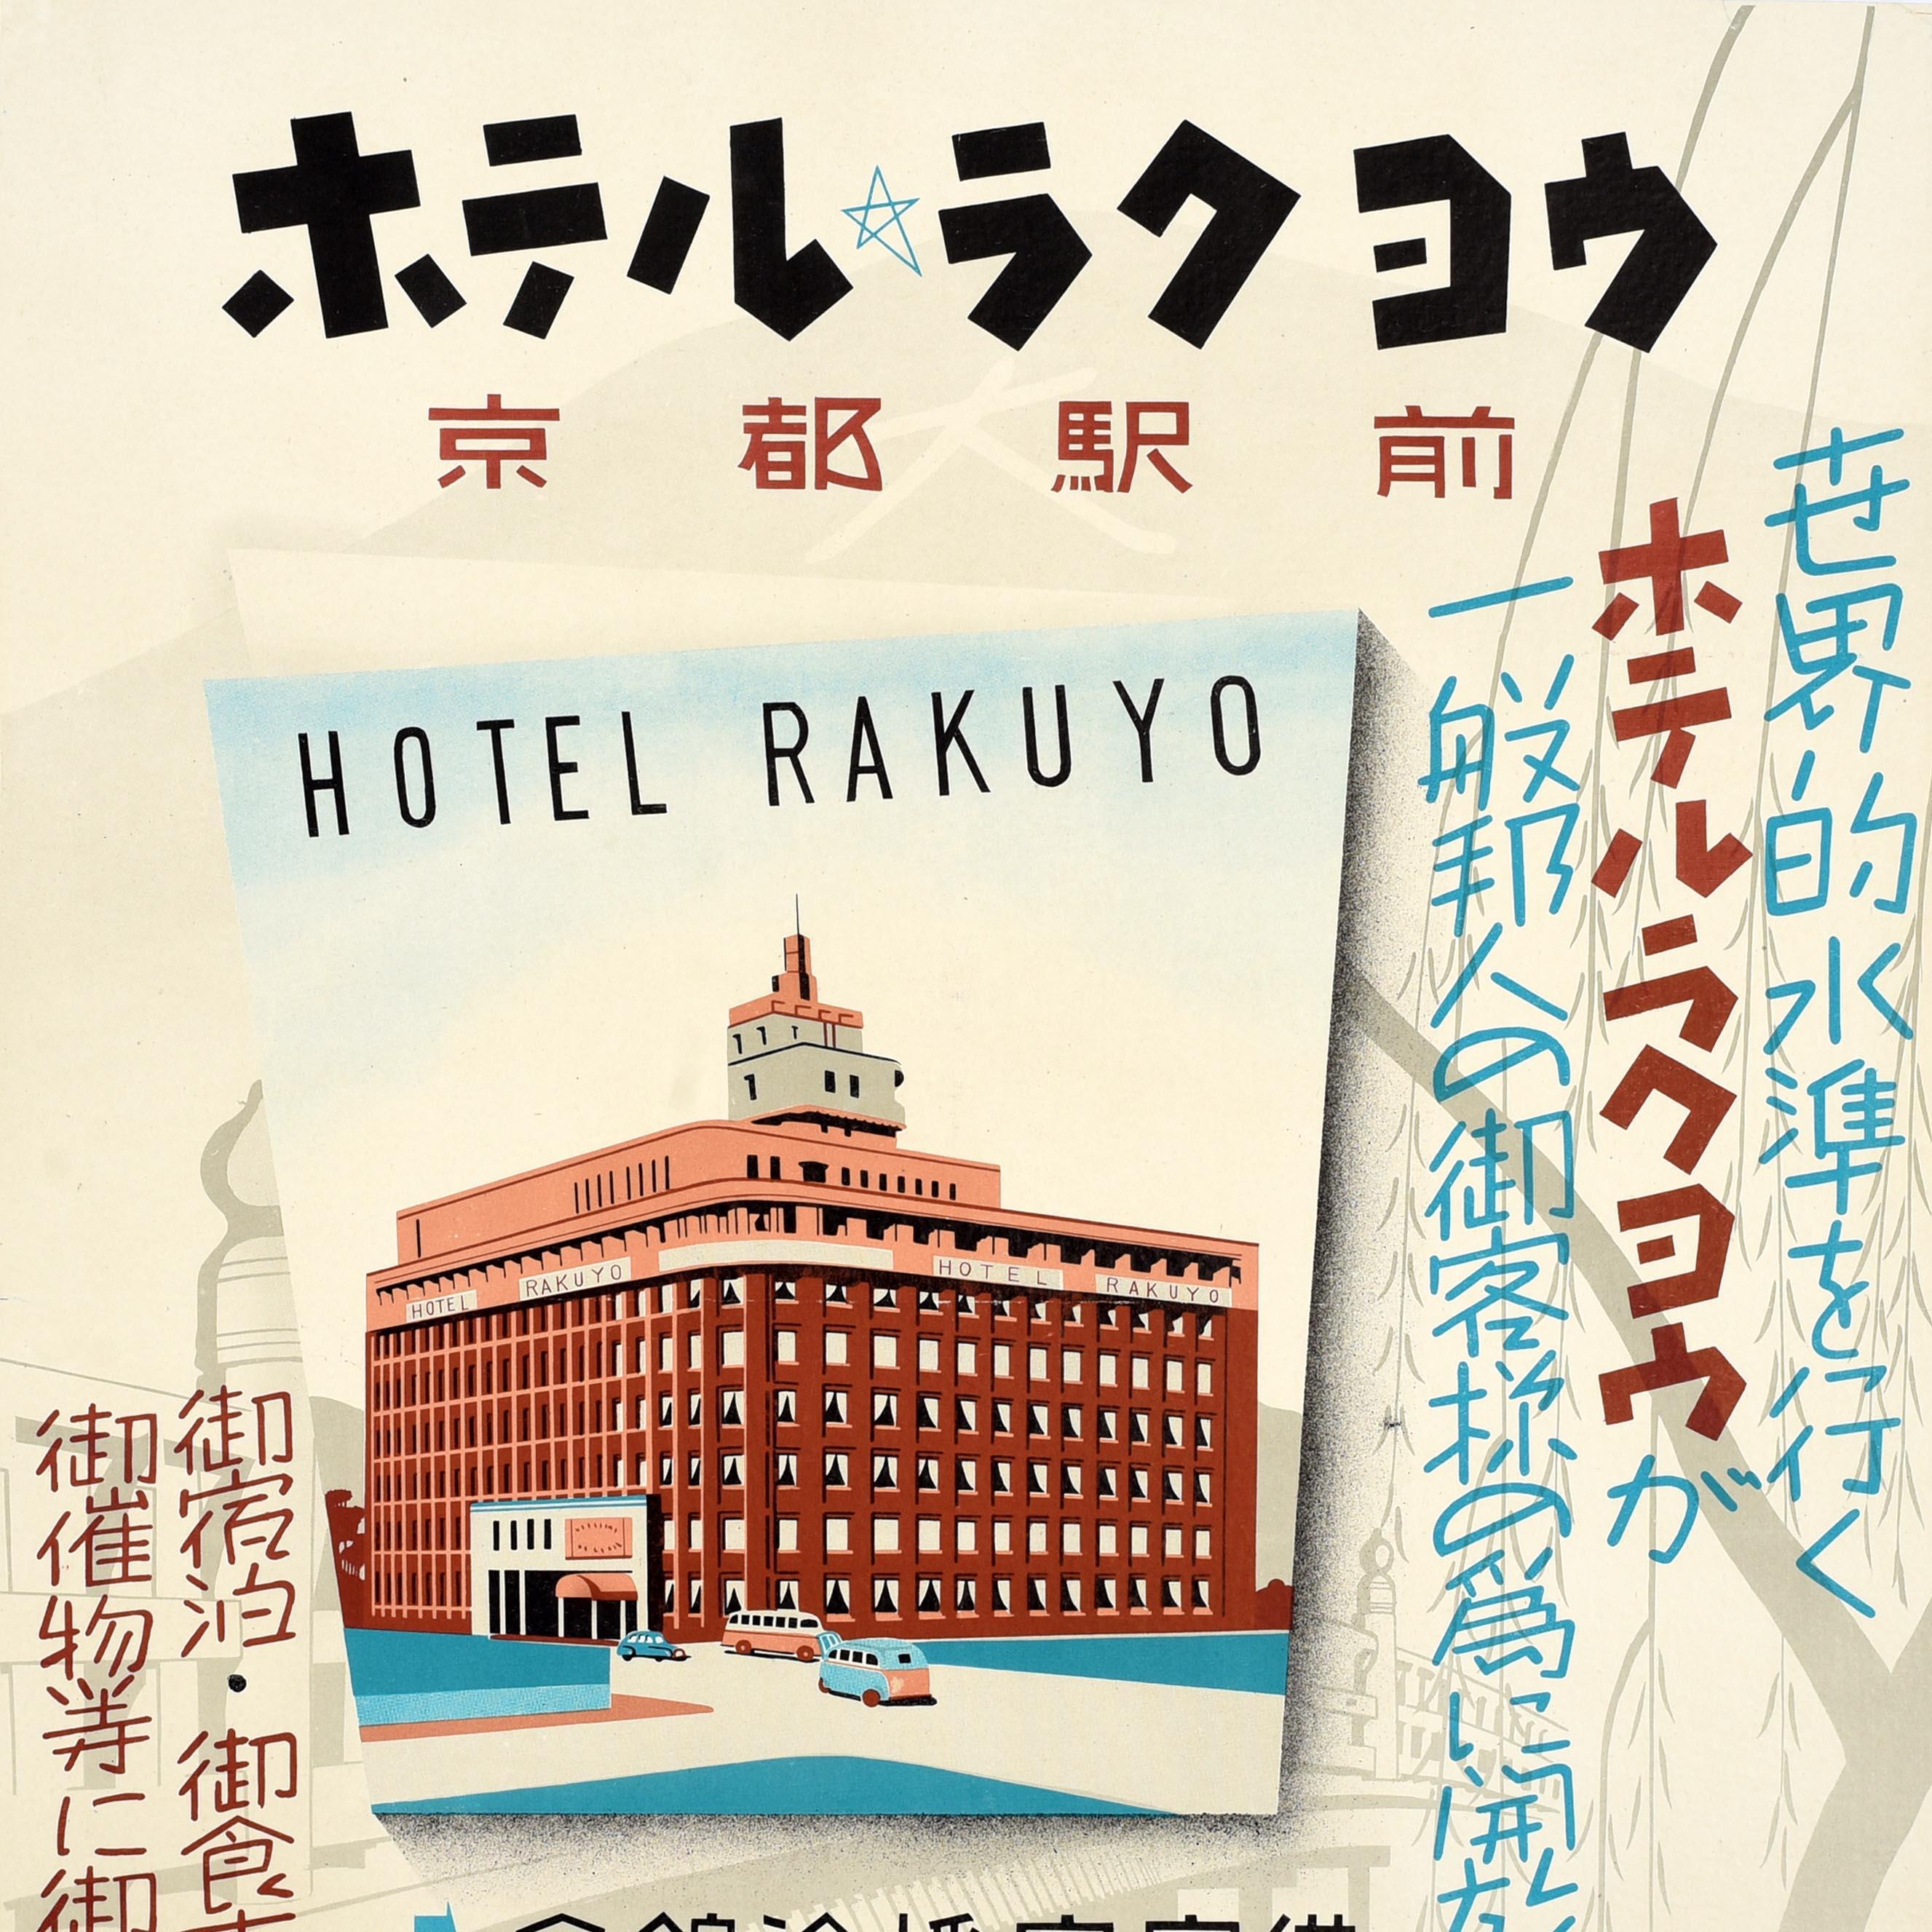 Affiche de voyage vintage originale annonçant l'hôtel Rakuyo devant la gare de Kyoto, comportant une illustration de l'hôtel avec des voitures et des bus garés à l'extérieur, le texte du titre en gras et des informations en japonais autour de